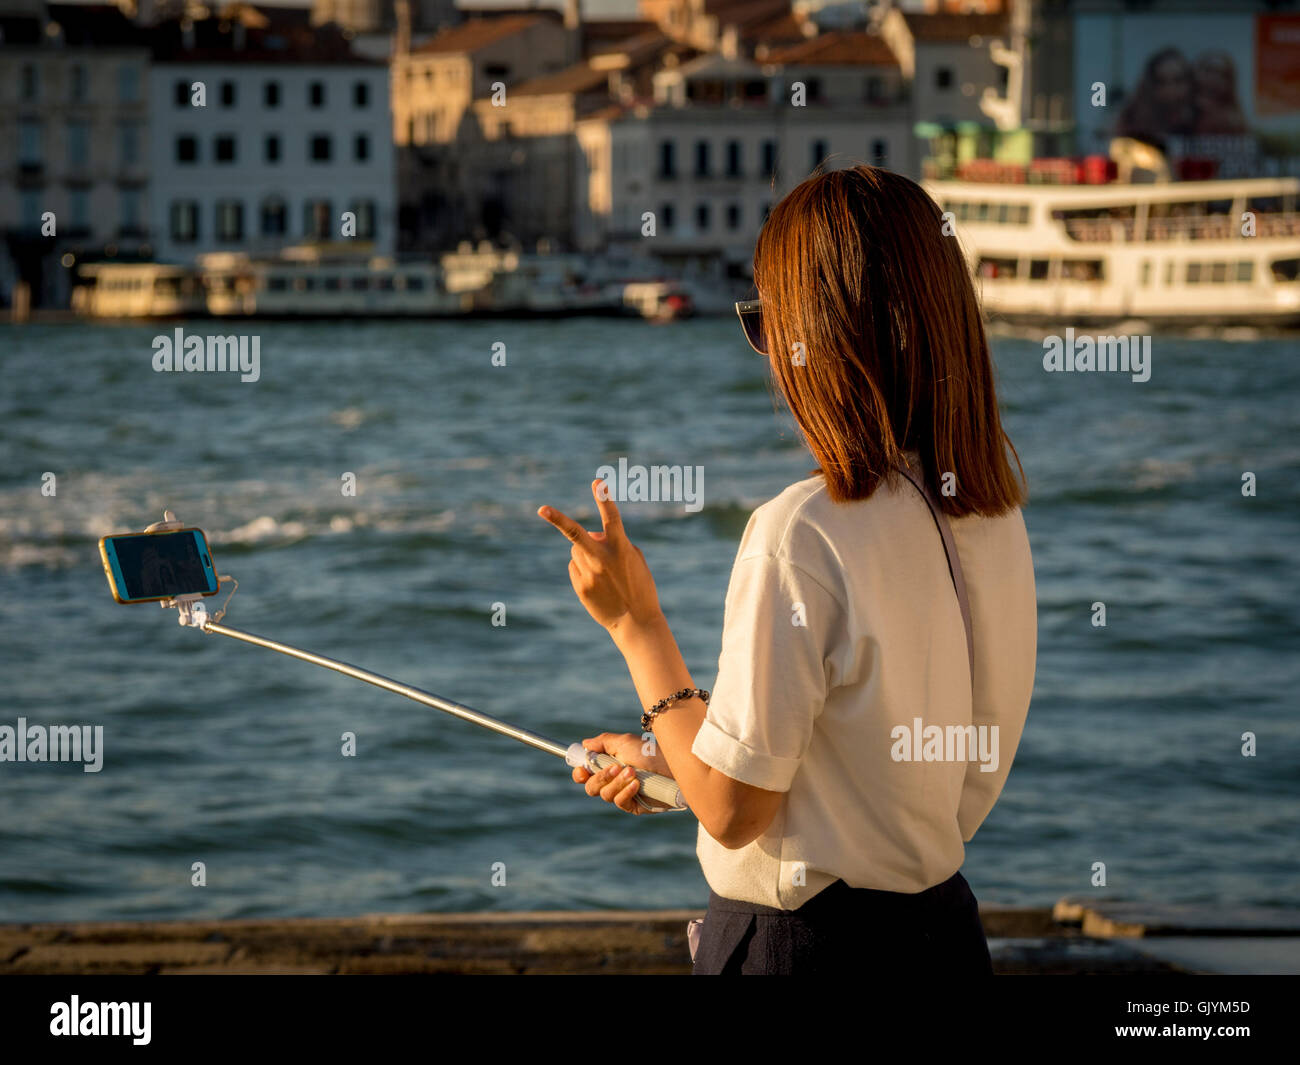 Junge asiatische Erwachsene weibliche Touristen nehmen ein Selbstporträt mit einem Selfie-Stick; machte das V-Zeichen mit den Fingern. Venedig, Italien. Stockfoto